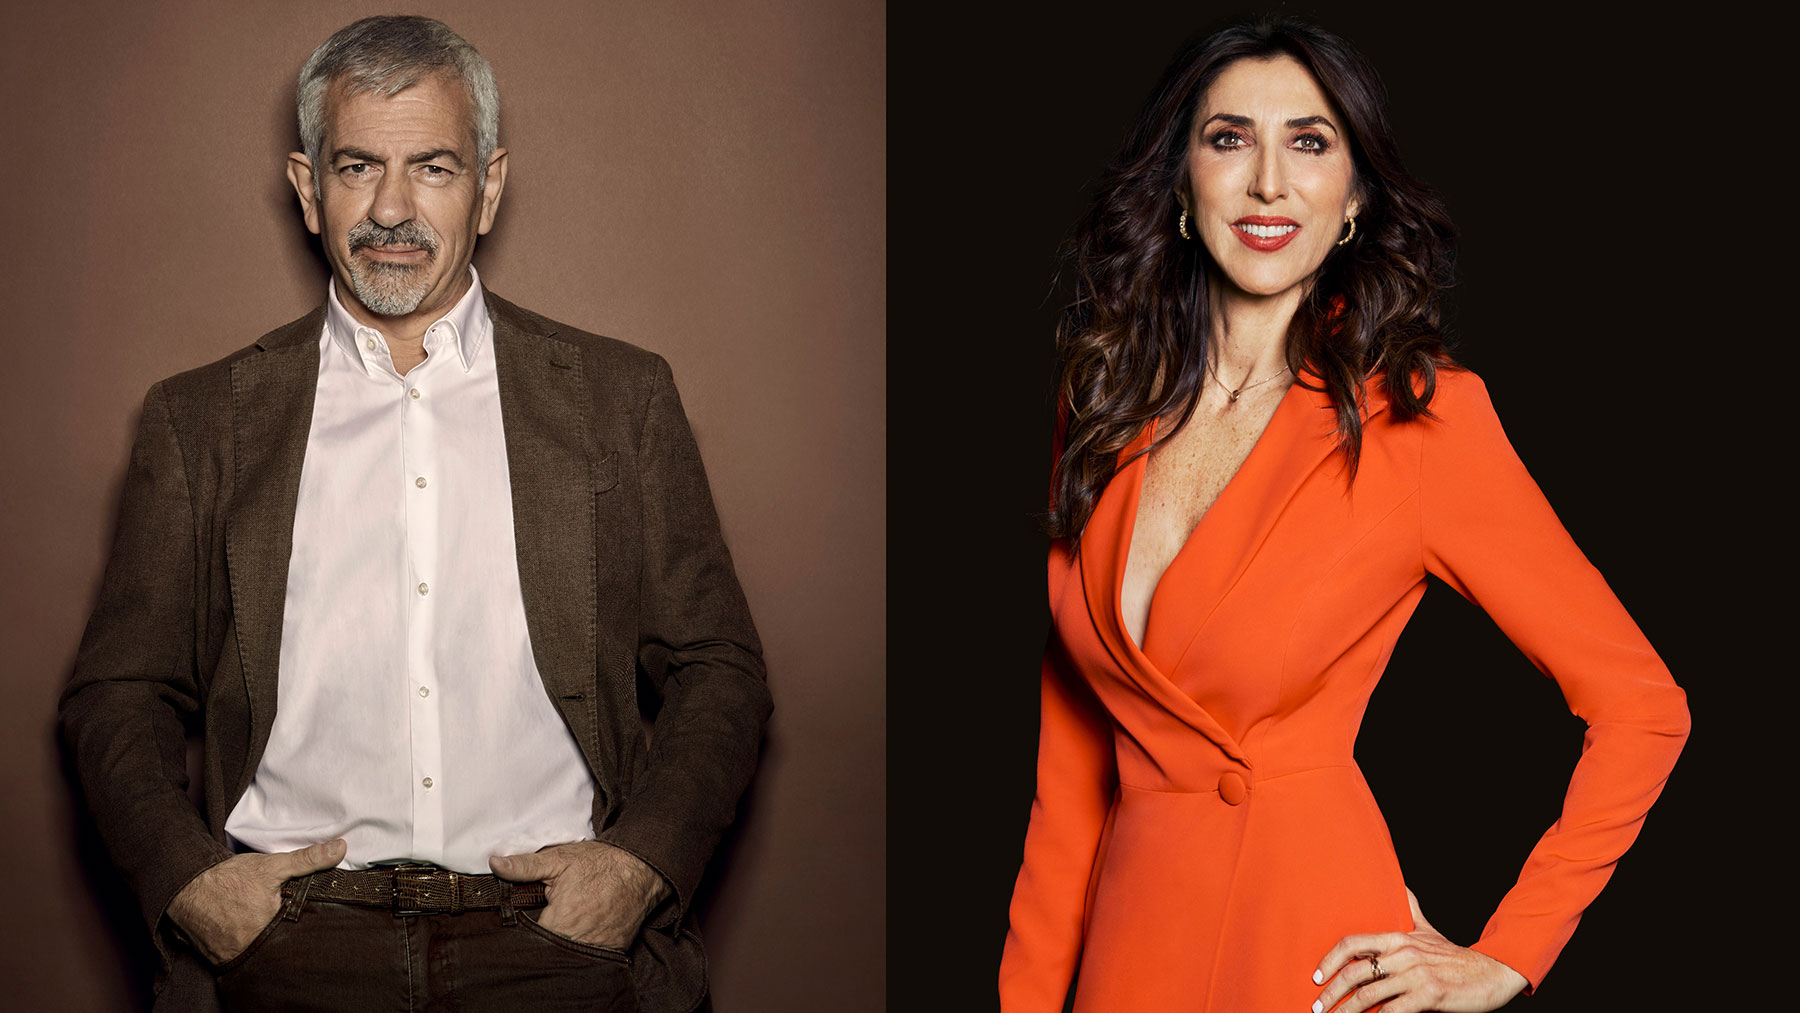 Carlos Sobera y Paz Padilla, presentadores de las Campanadas / Mediaset